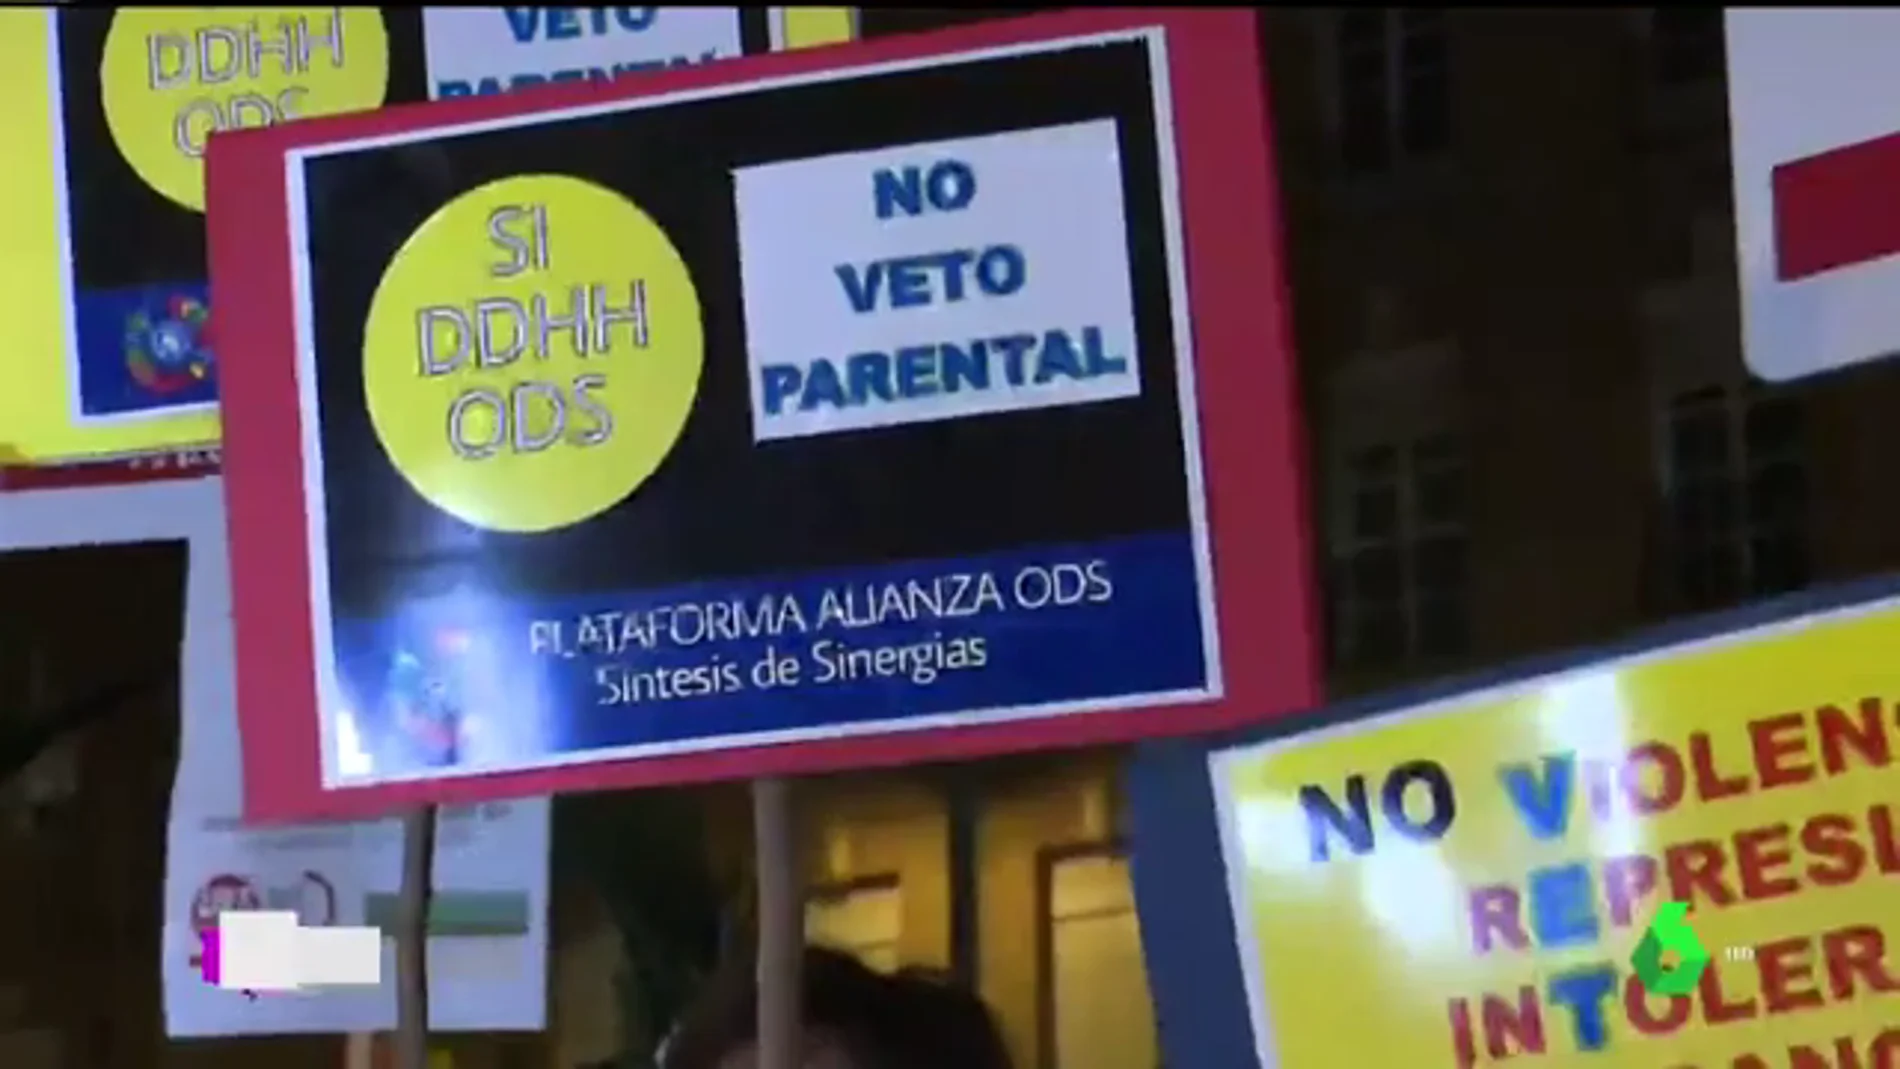 Manifestación en Murcia contra el veto parental que exige Vox